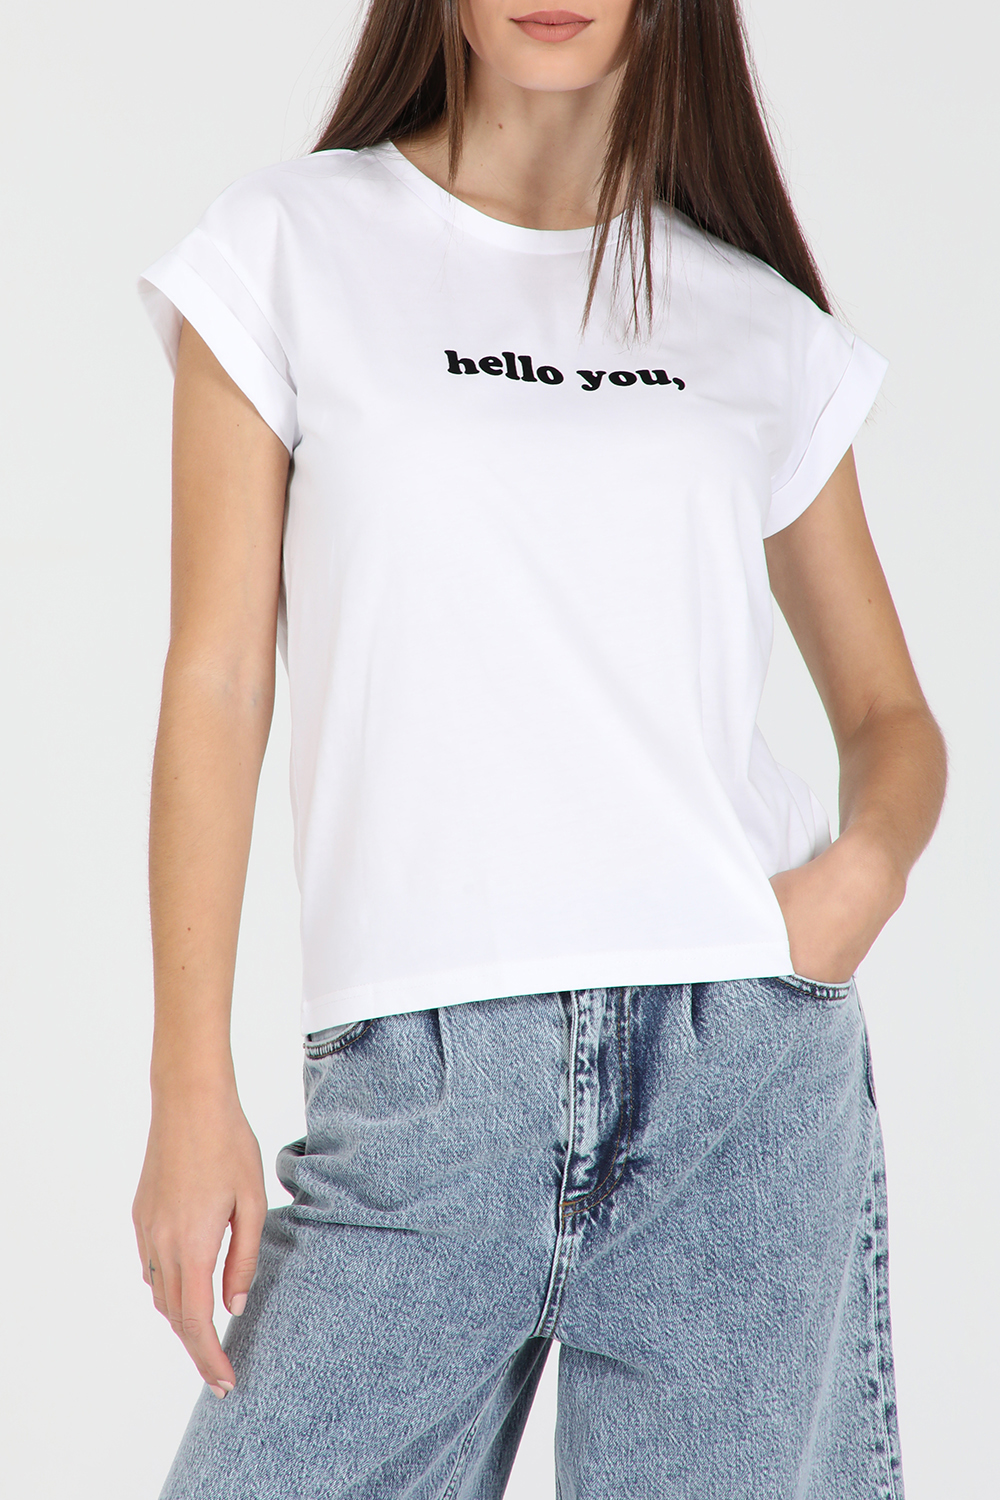 Γυναικεία/Ρούχα/Μπλούζες/Κοντομάνικες GRACE AND MILA - Γυναικείο κοντομάνικο t-shirt GRACE AND MILA DAWSON εκρού